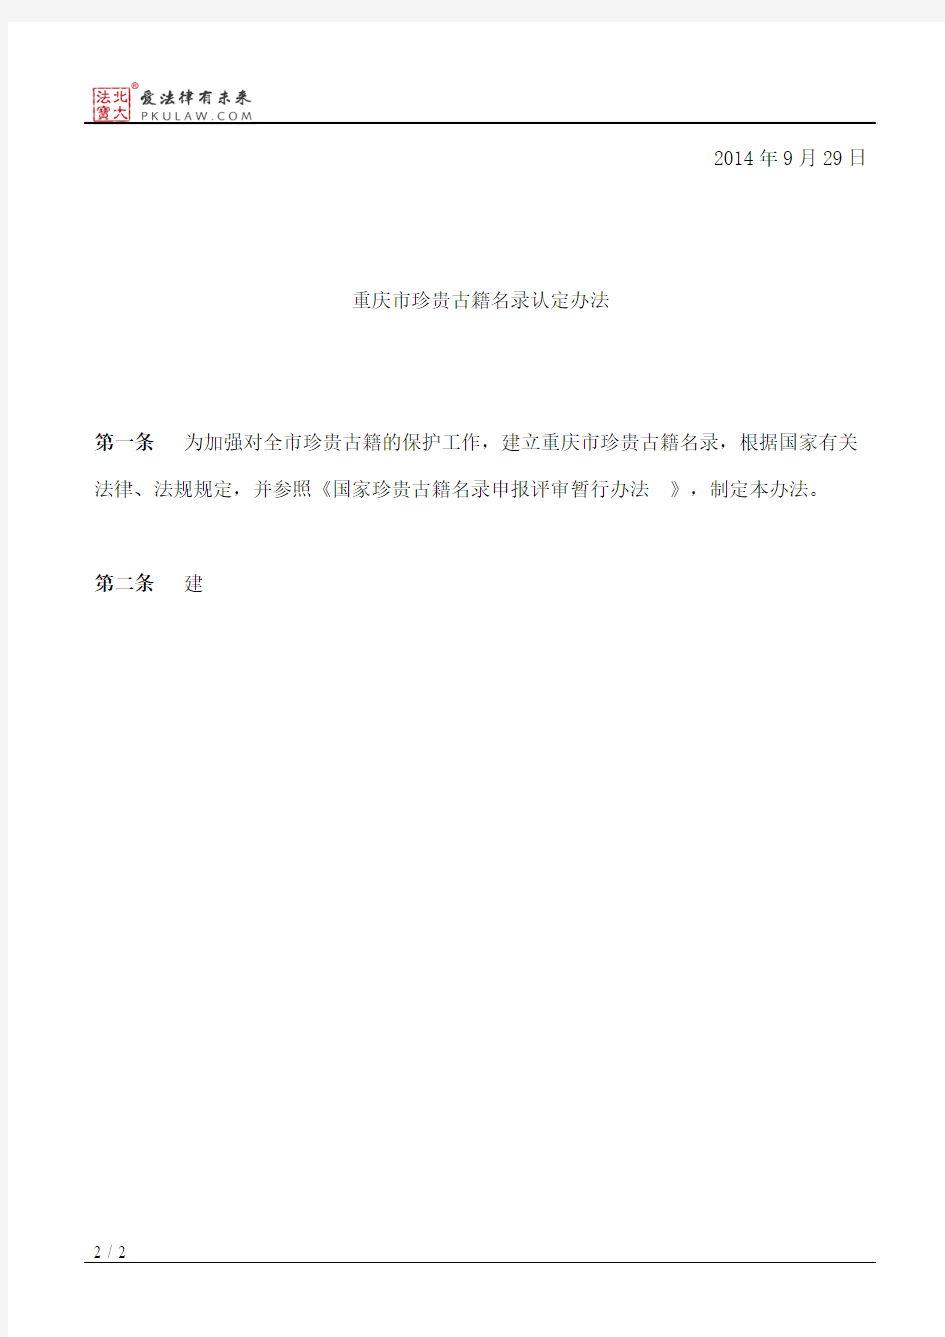 重庆市文化委员会关于印发《重庆市珍贵古籍名录认定办法》的通知